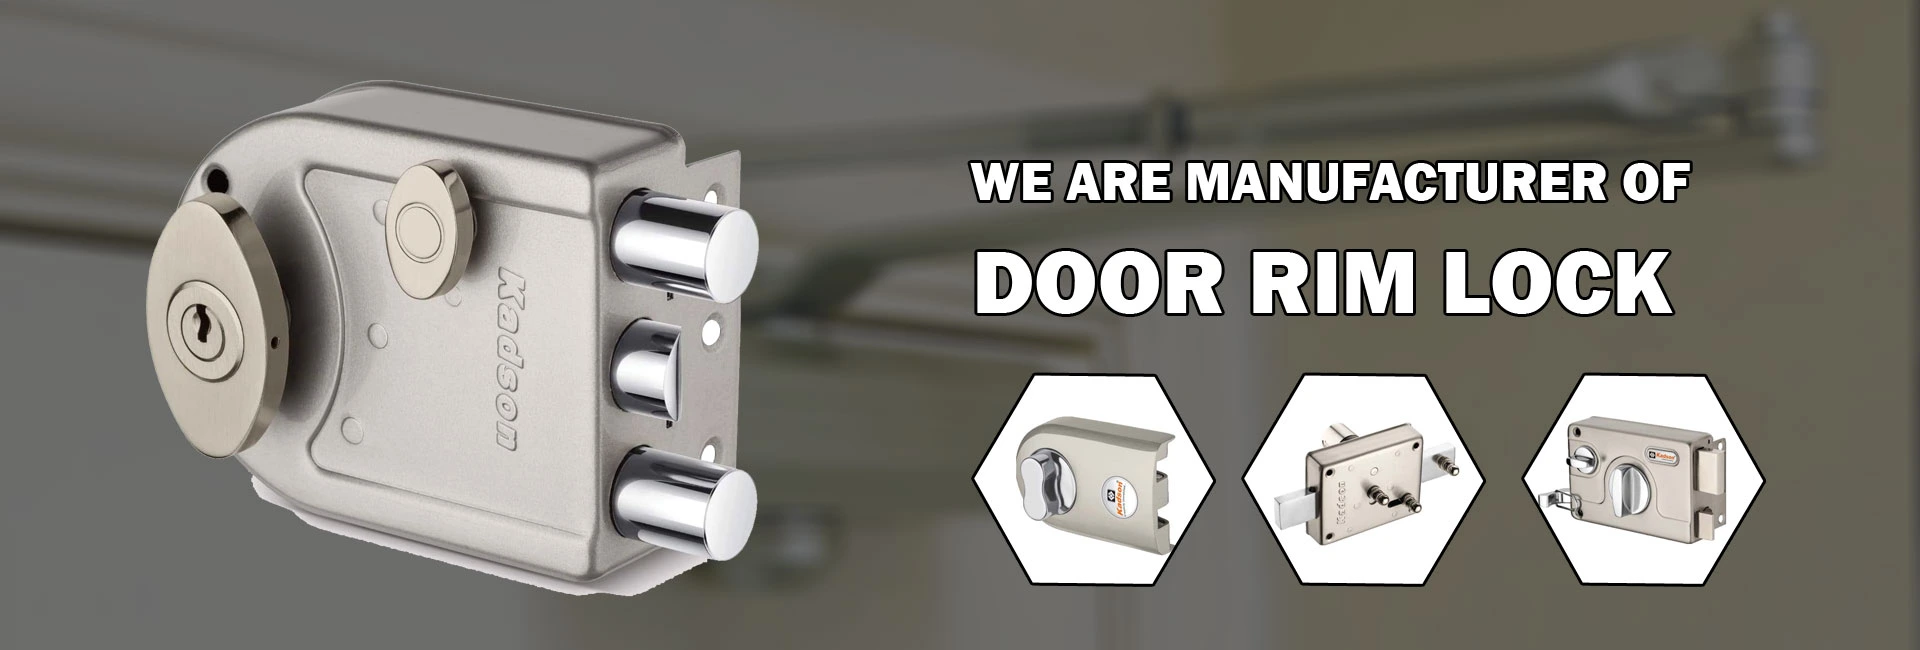 Door Lock Manufacturer & Suppliers - Door Rim Lock, Euro Cylinder Lock